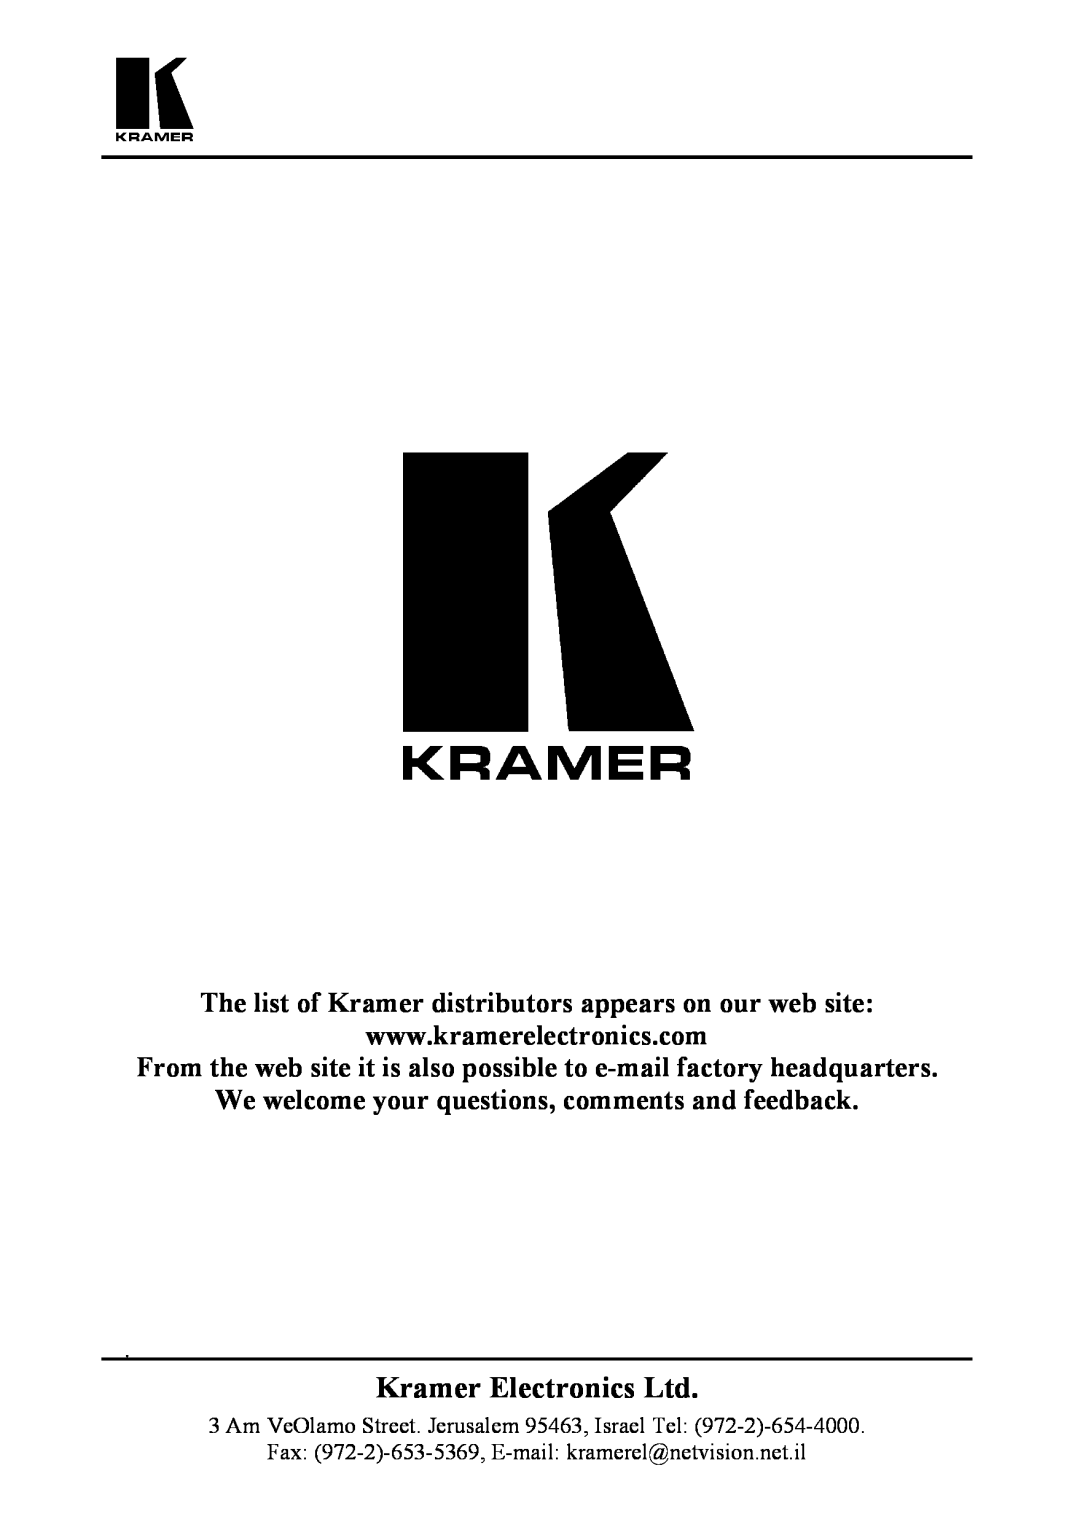 Kramer Electronics 123V user manual The list of Kramer distributors appears on our web site 